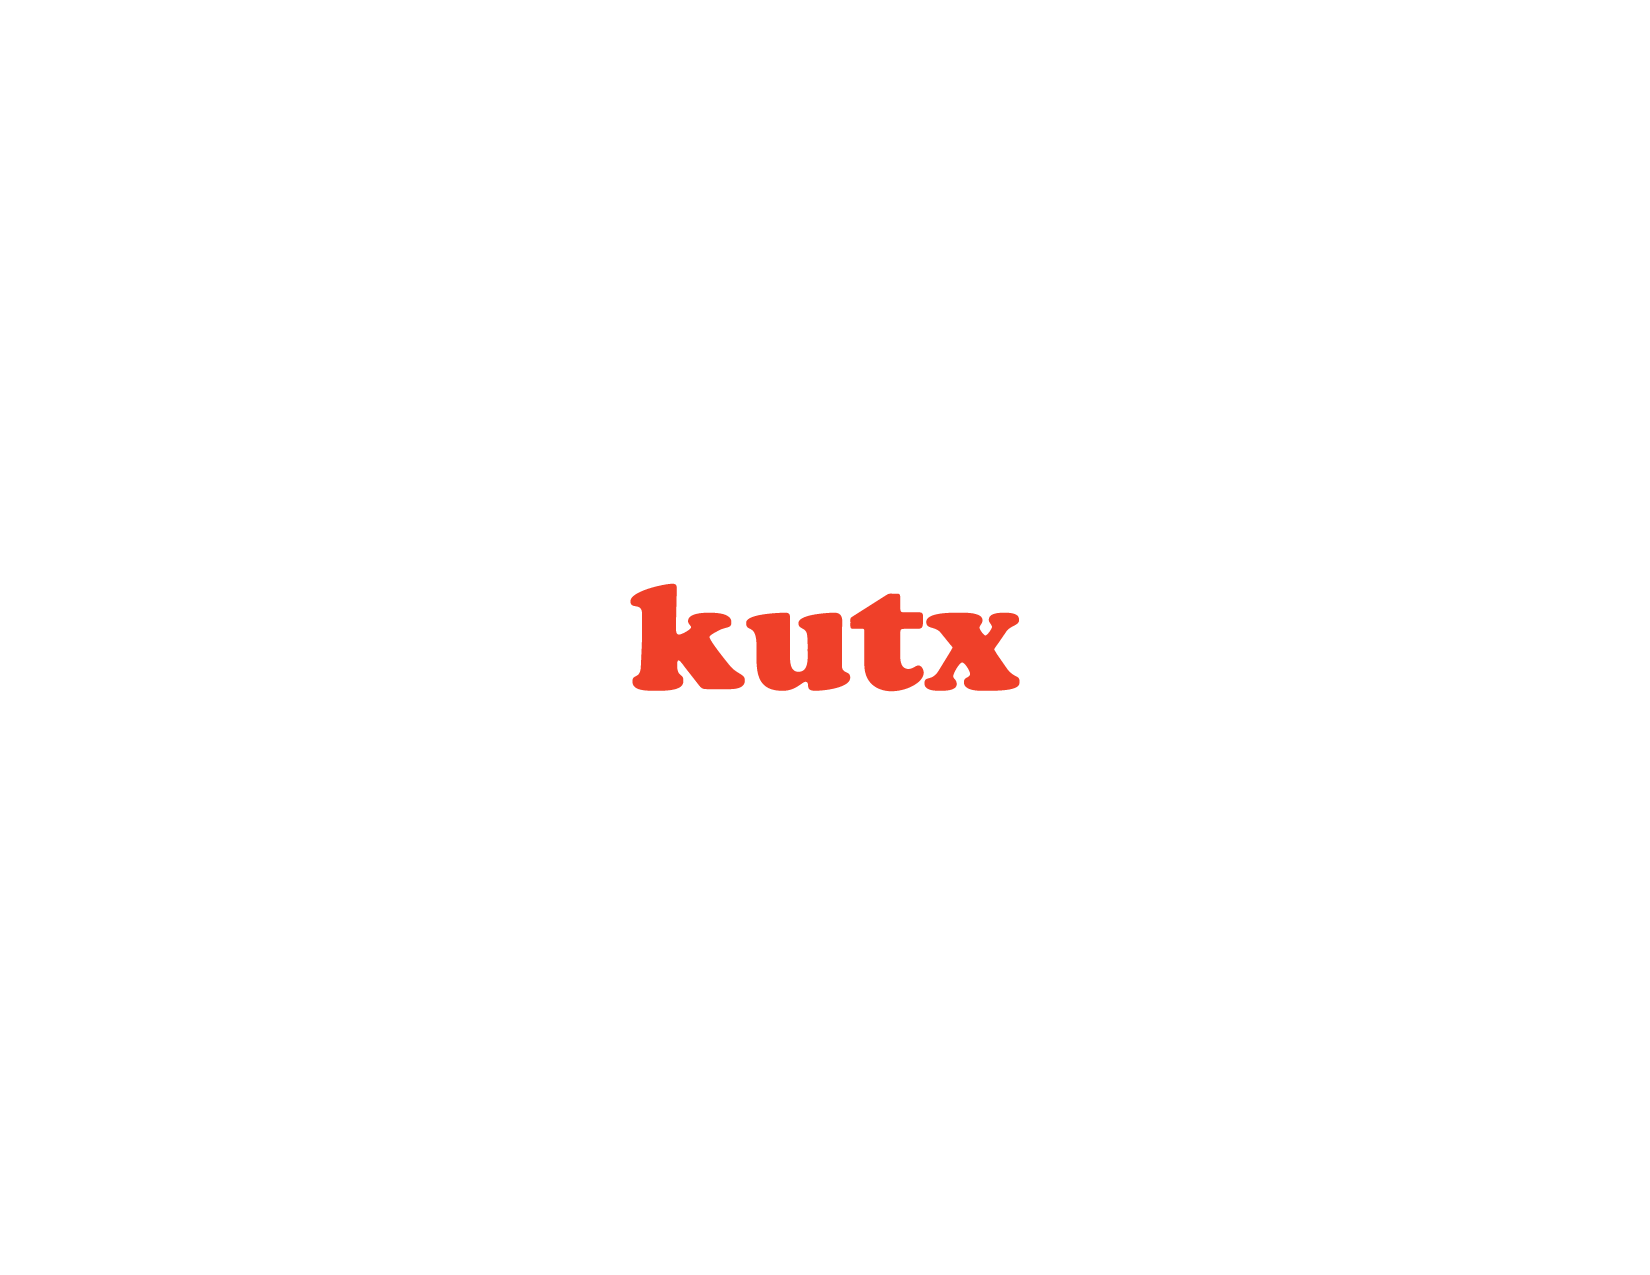 KUTX-01.png